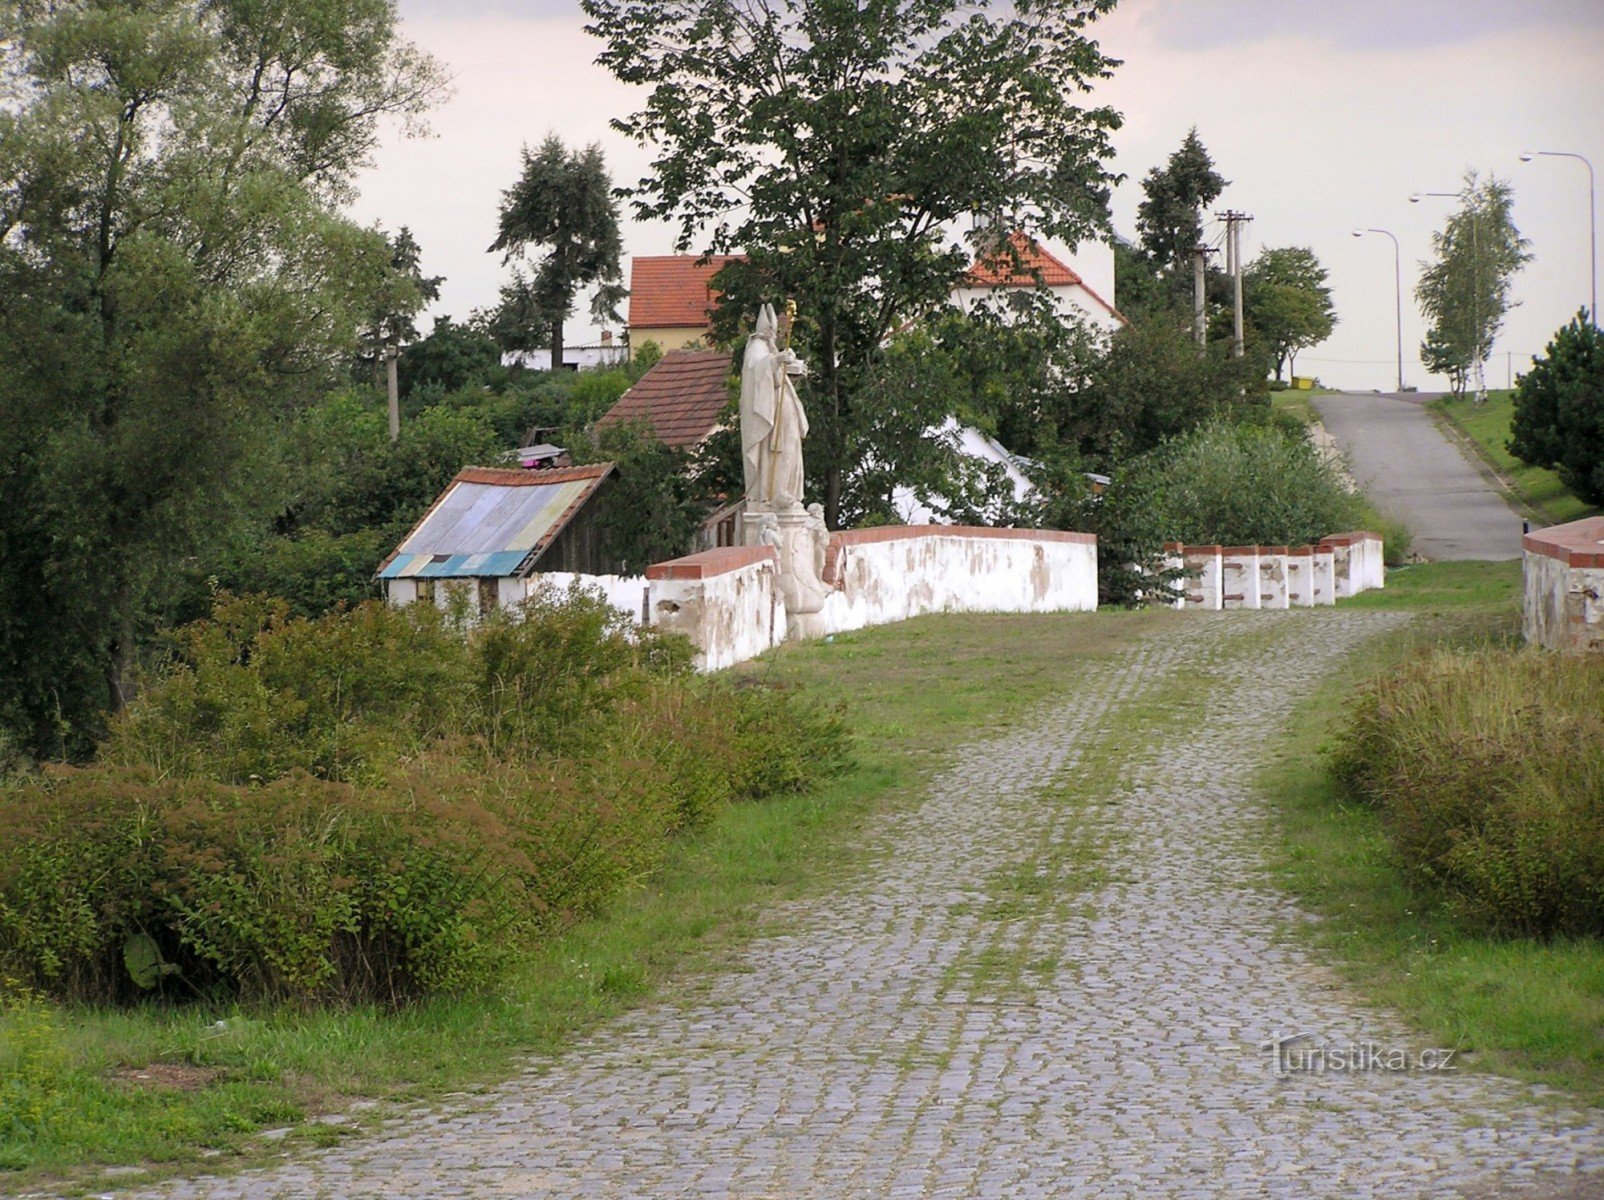 o secțiune bine conservată a vechiului drum imperial asfaltat cu un pod (o statuie a Sfântului Nicolae pe el)